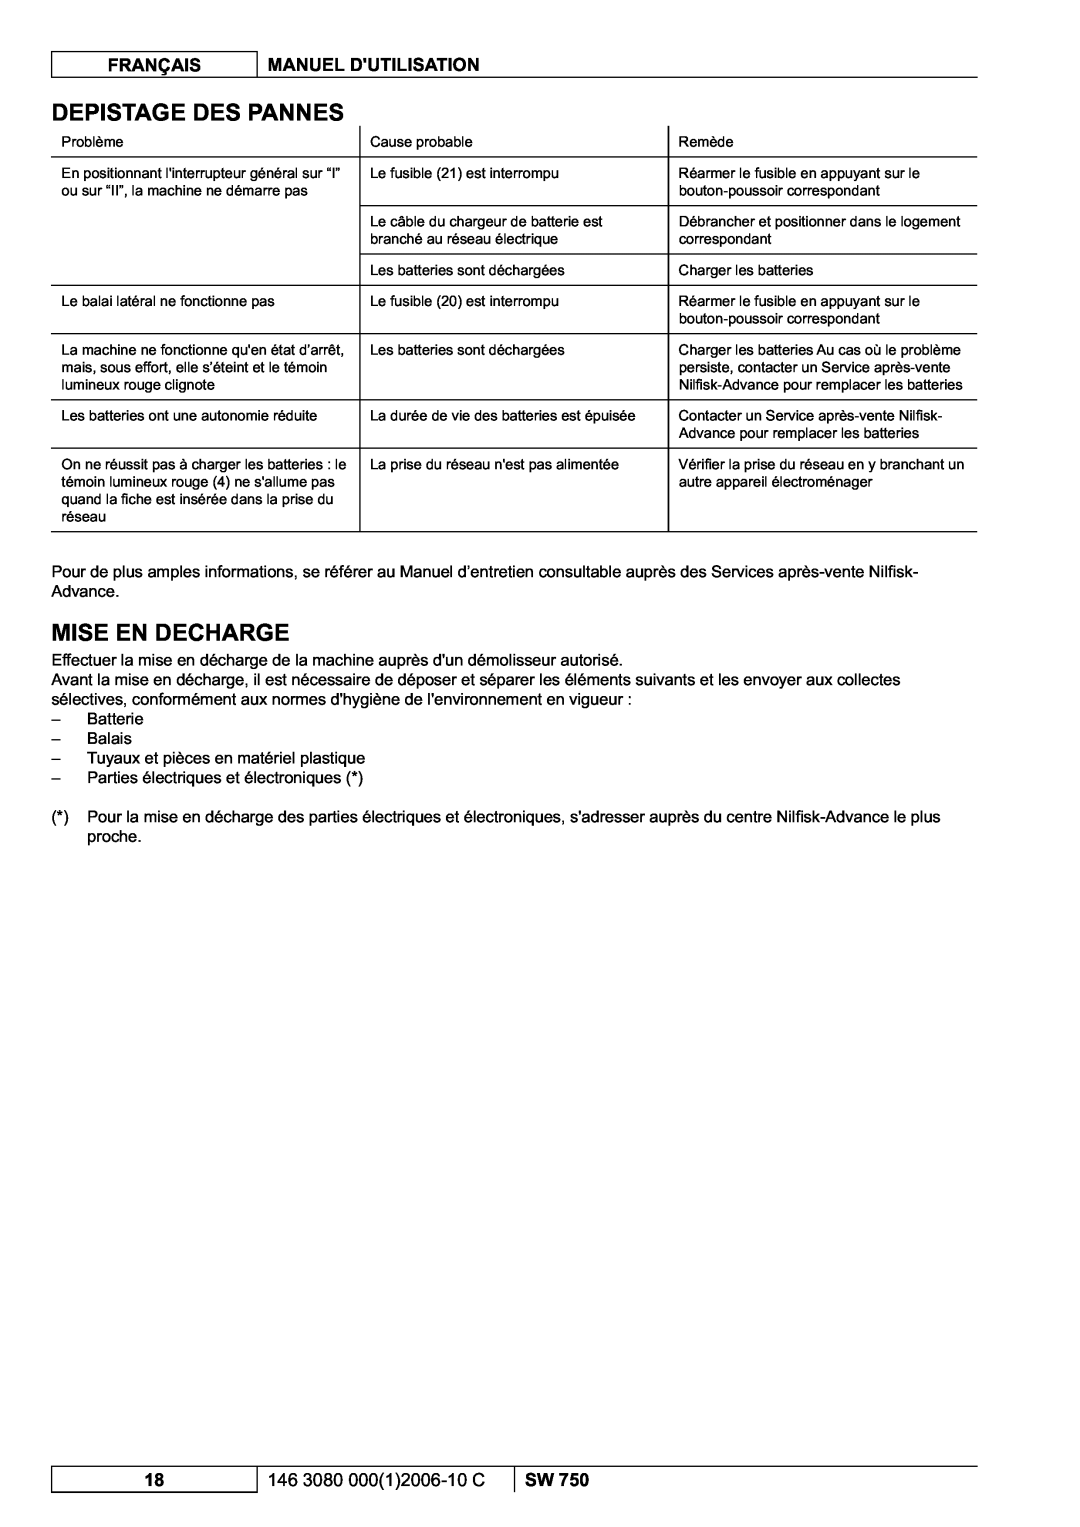 Nilfisk-ALTO SW 750 manuel dutilisation Depistage Des Pannes, Mise En Decharge 